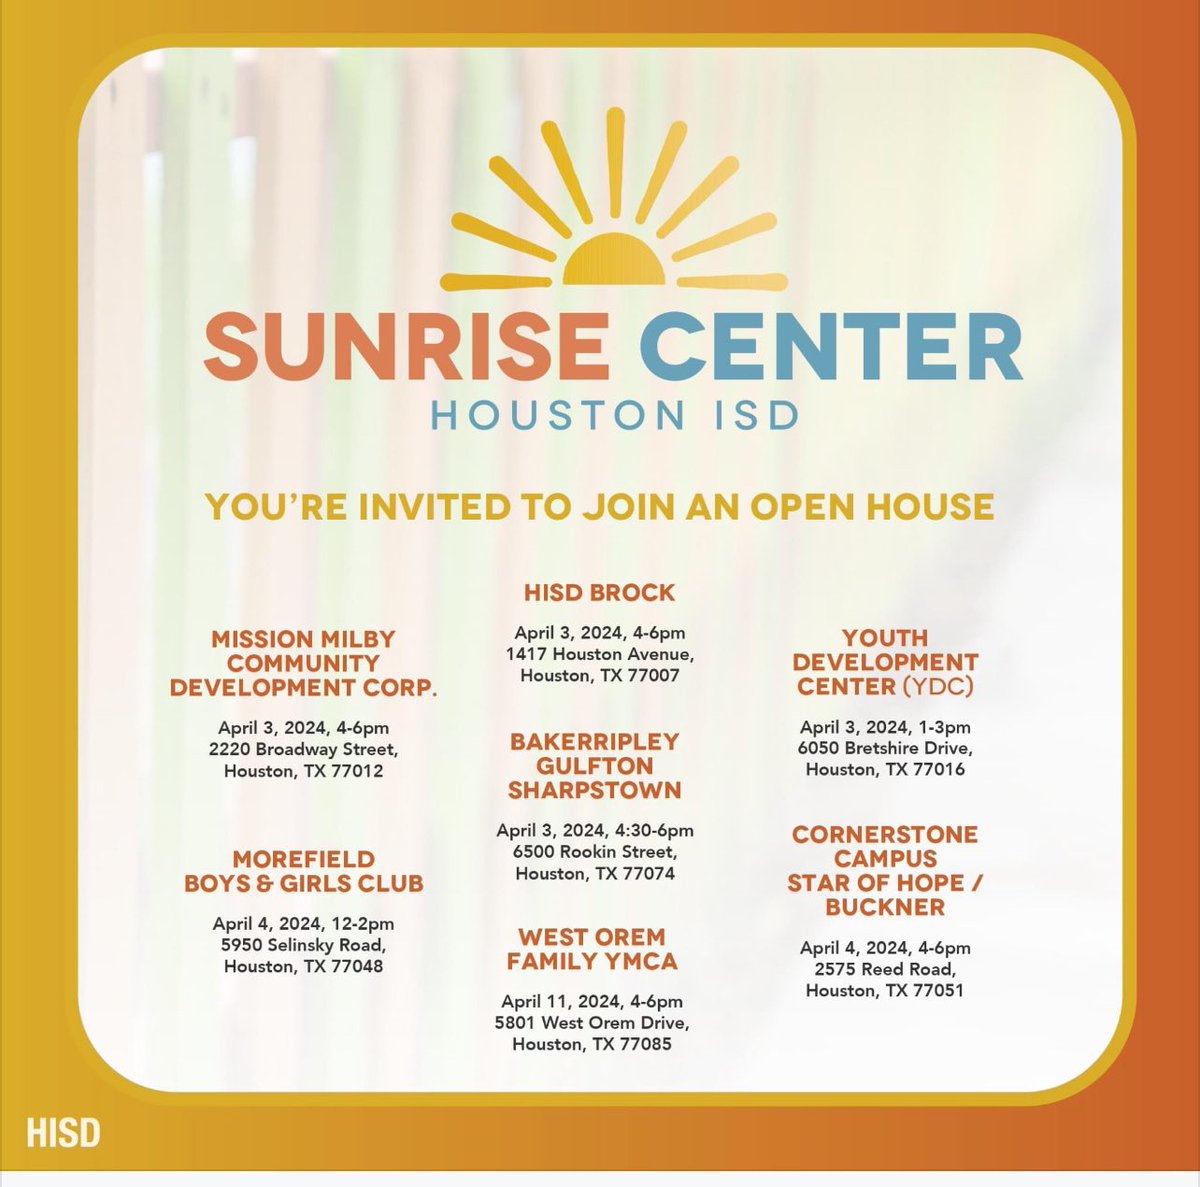 Visit our Sunrise Centers